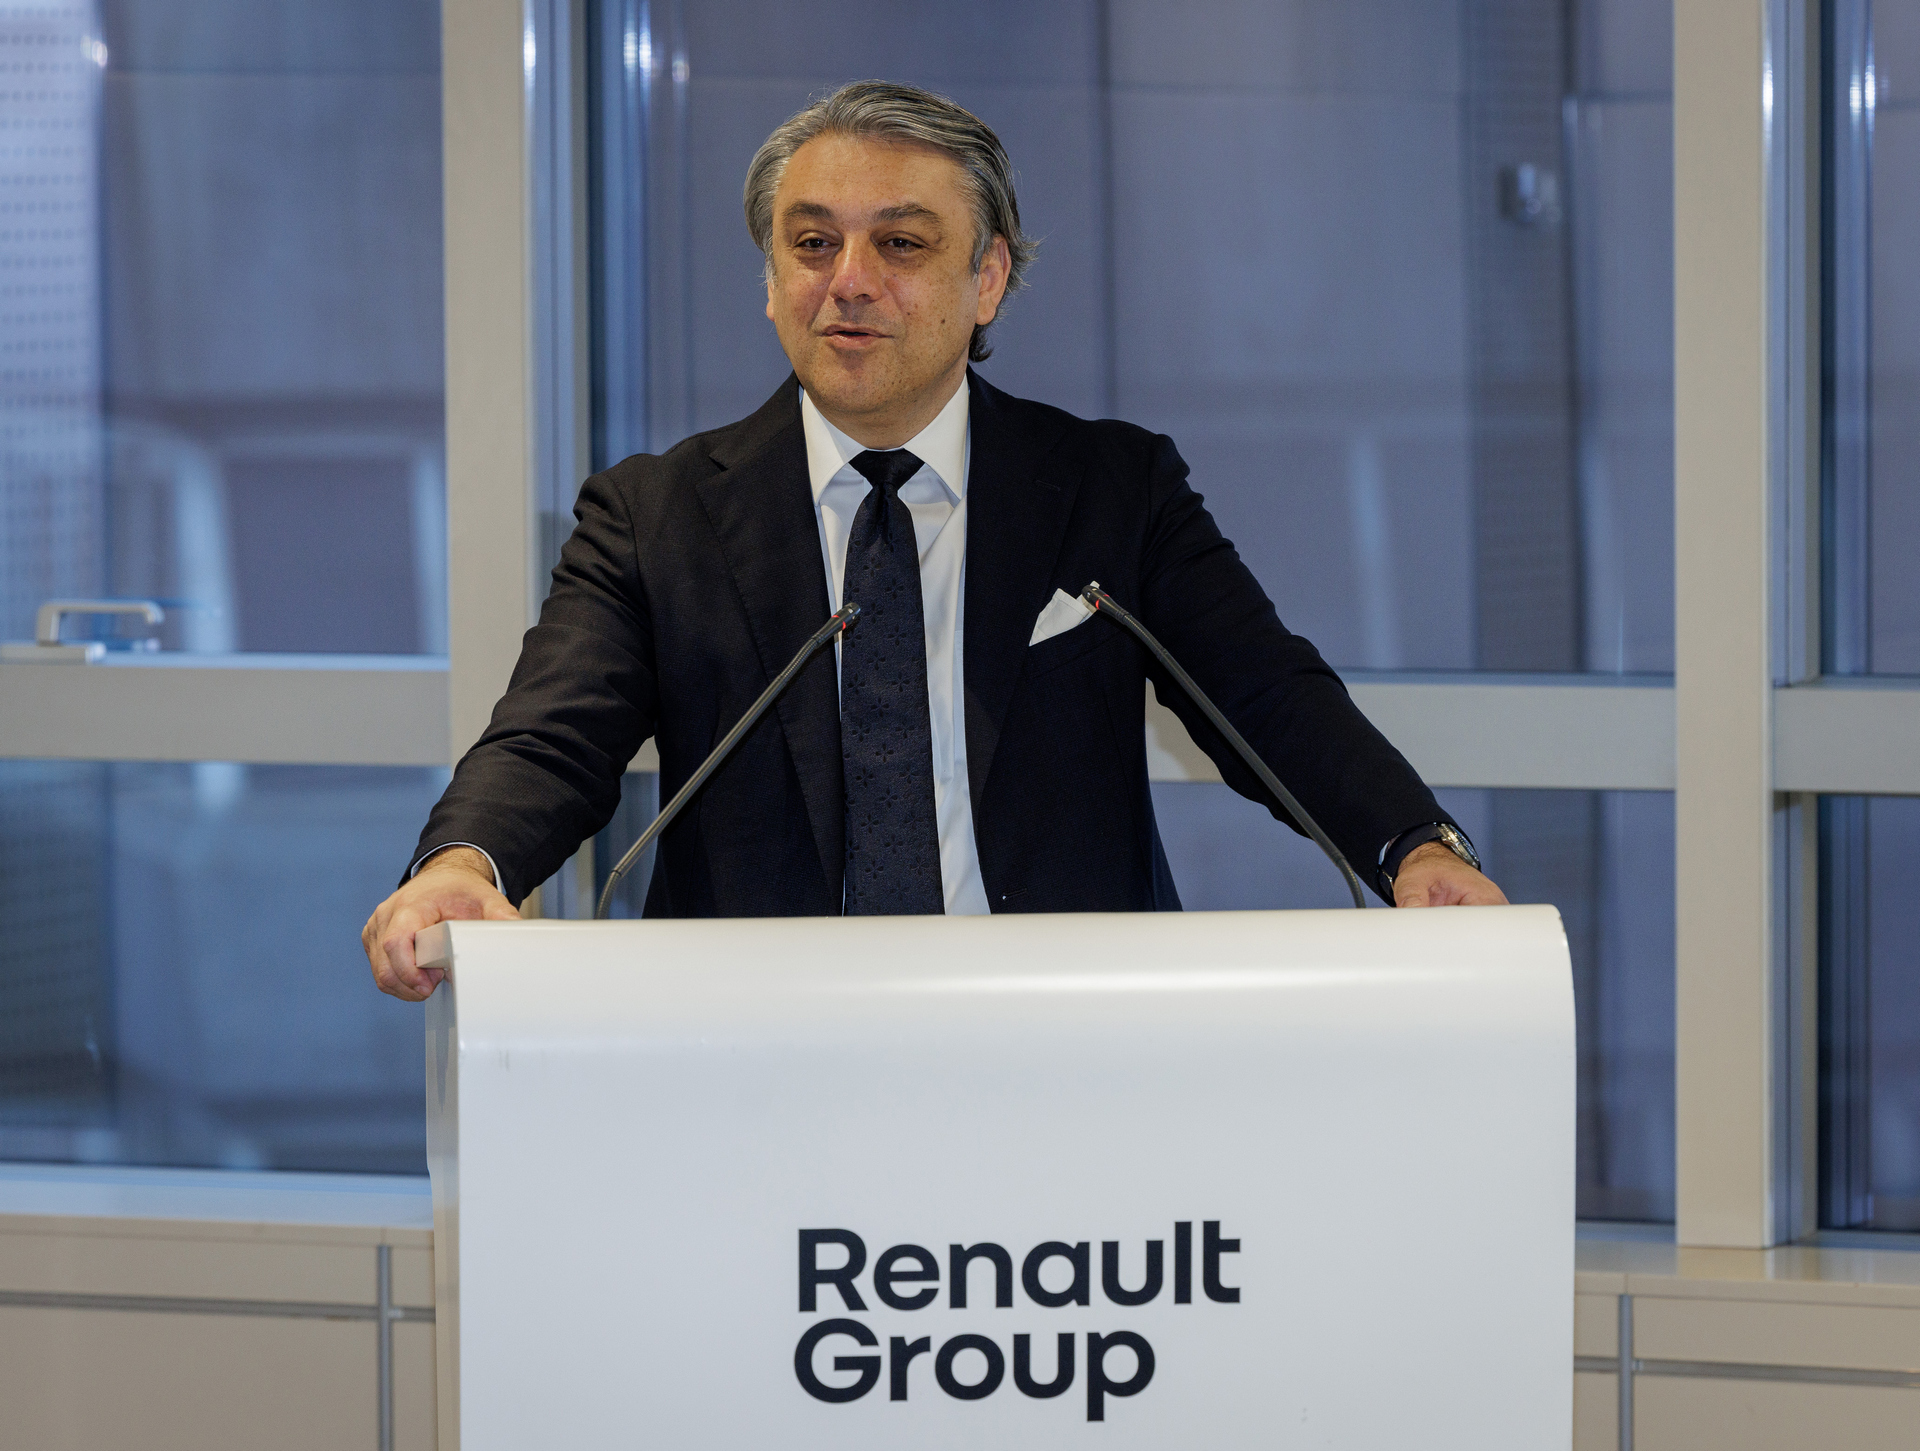 Renault Group - Luca de Meo